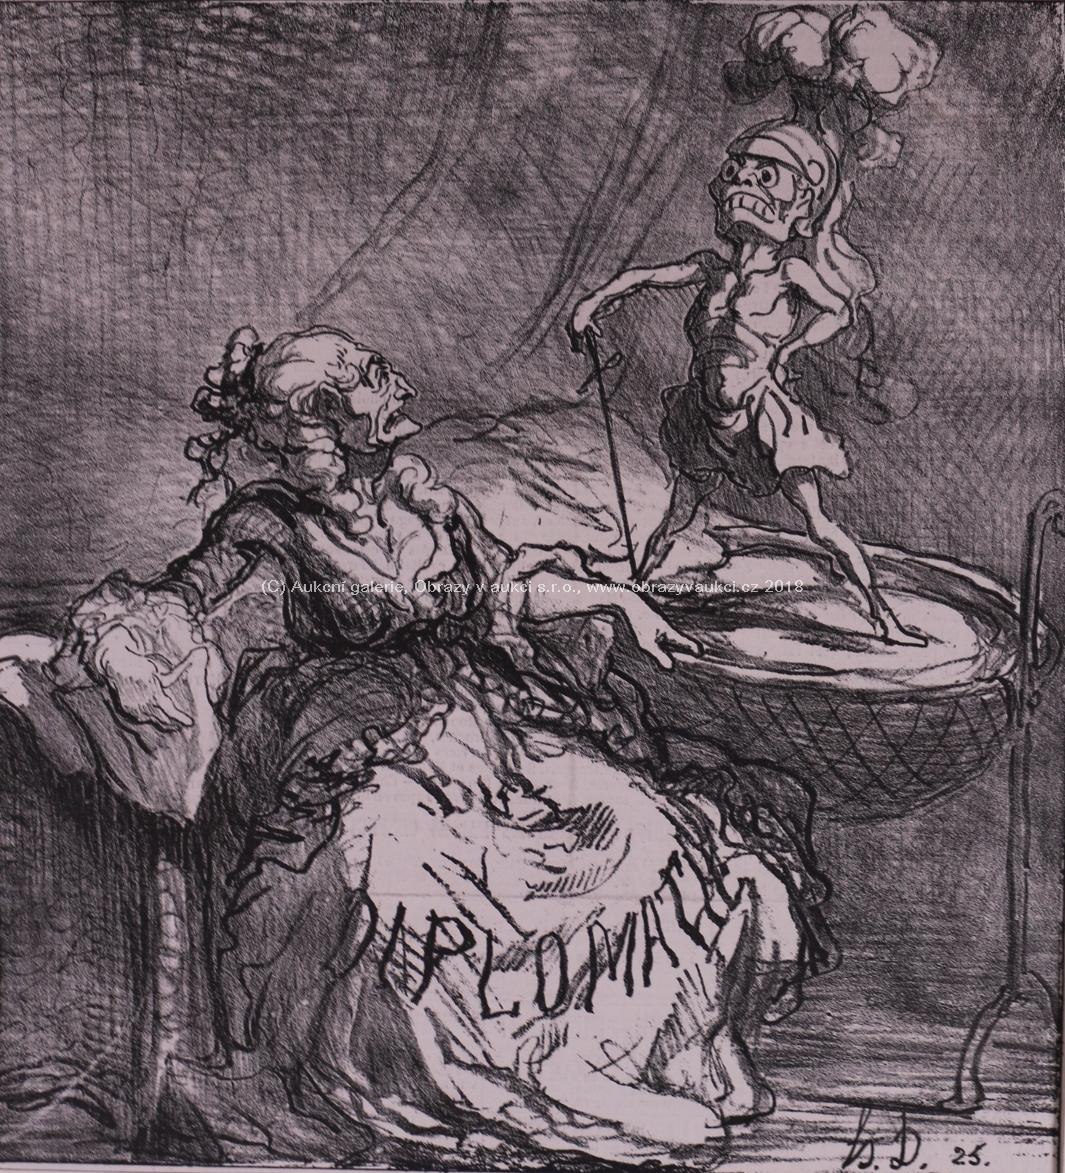 Honoré Daumier - J'ai en bien le bercer, impossible de l'endormir